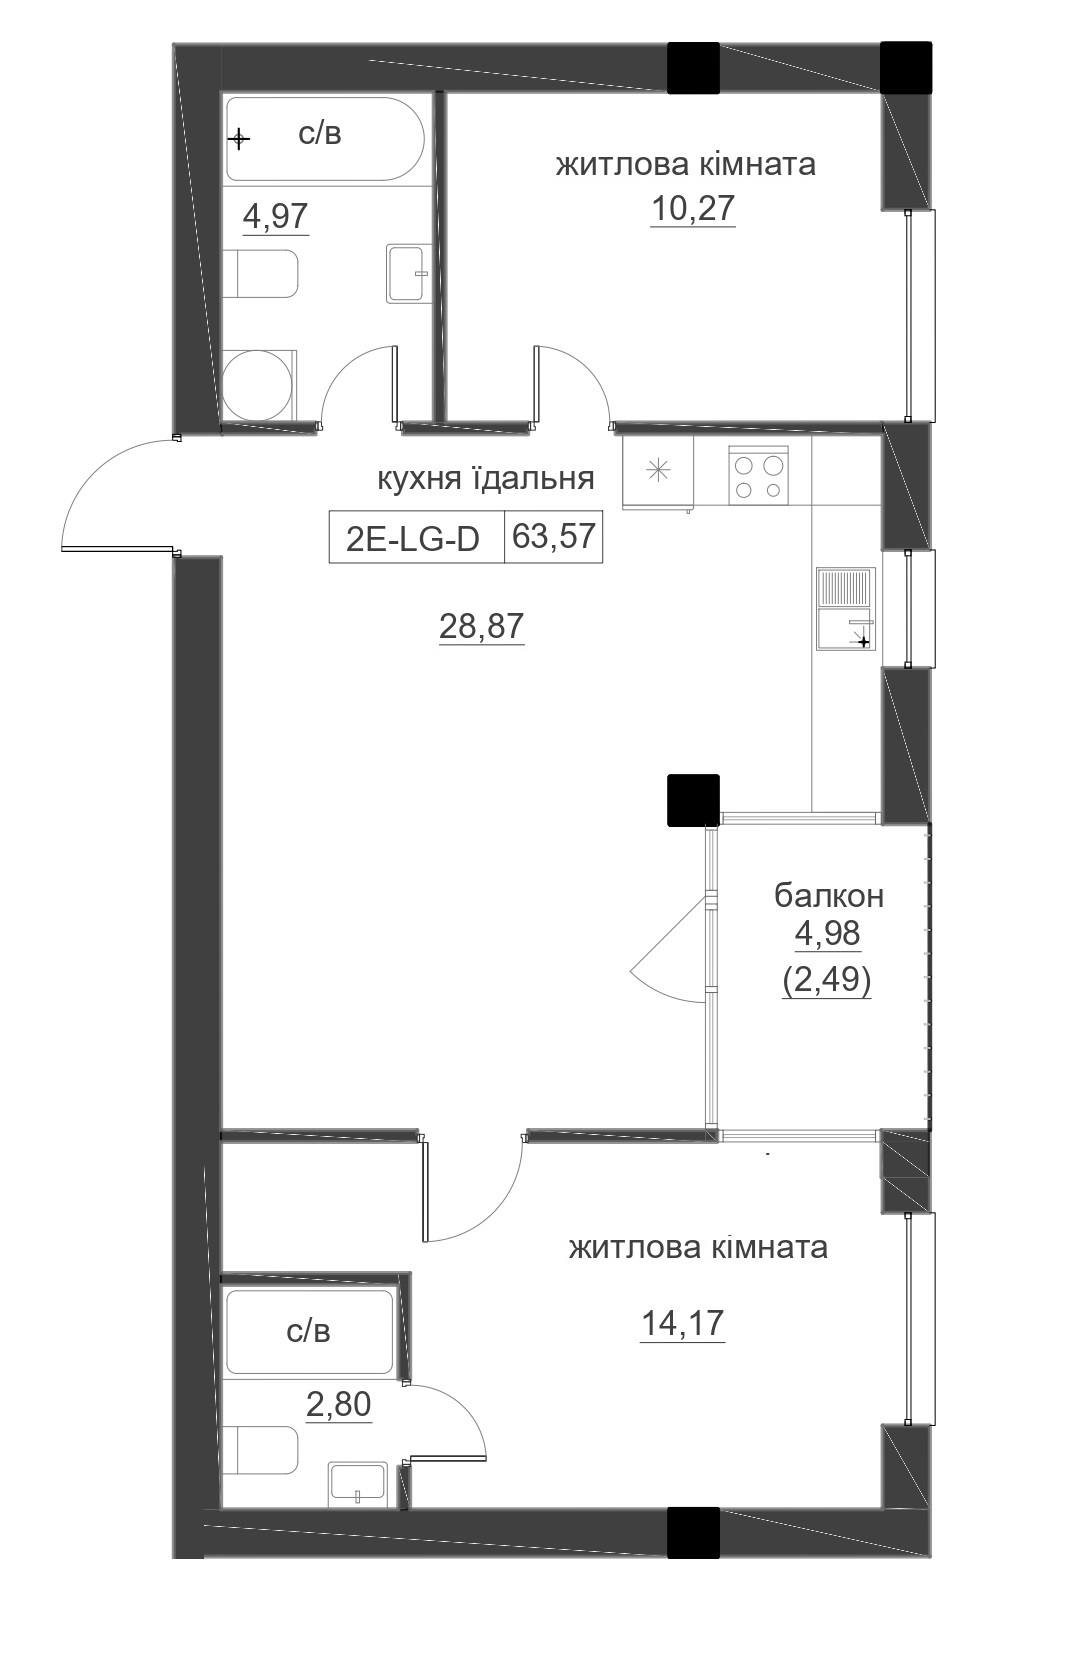 Планування 2-к квартира площею 63.57м2, LR-005-09/0006.